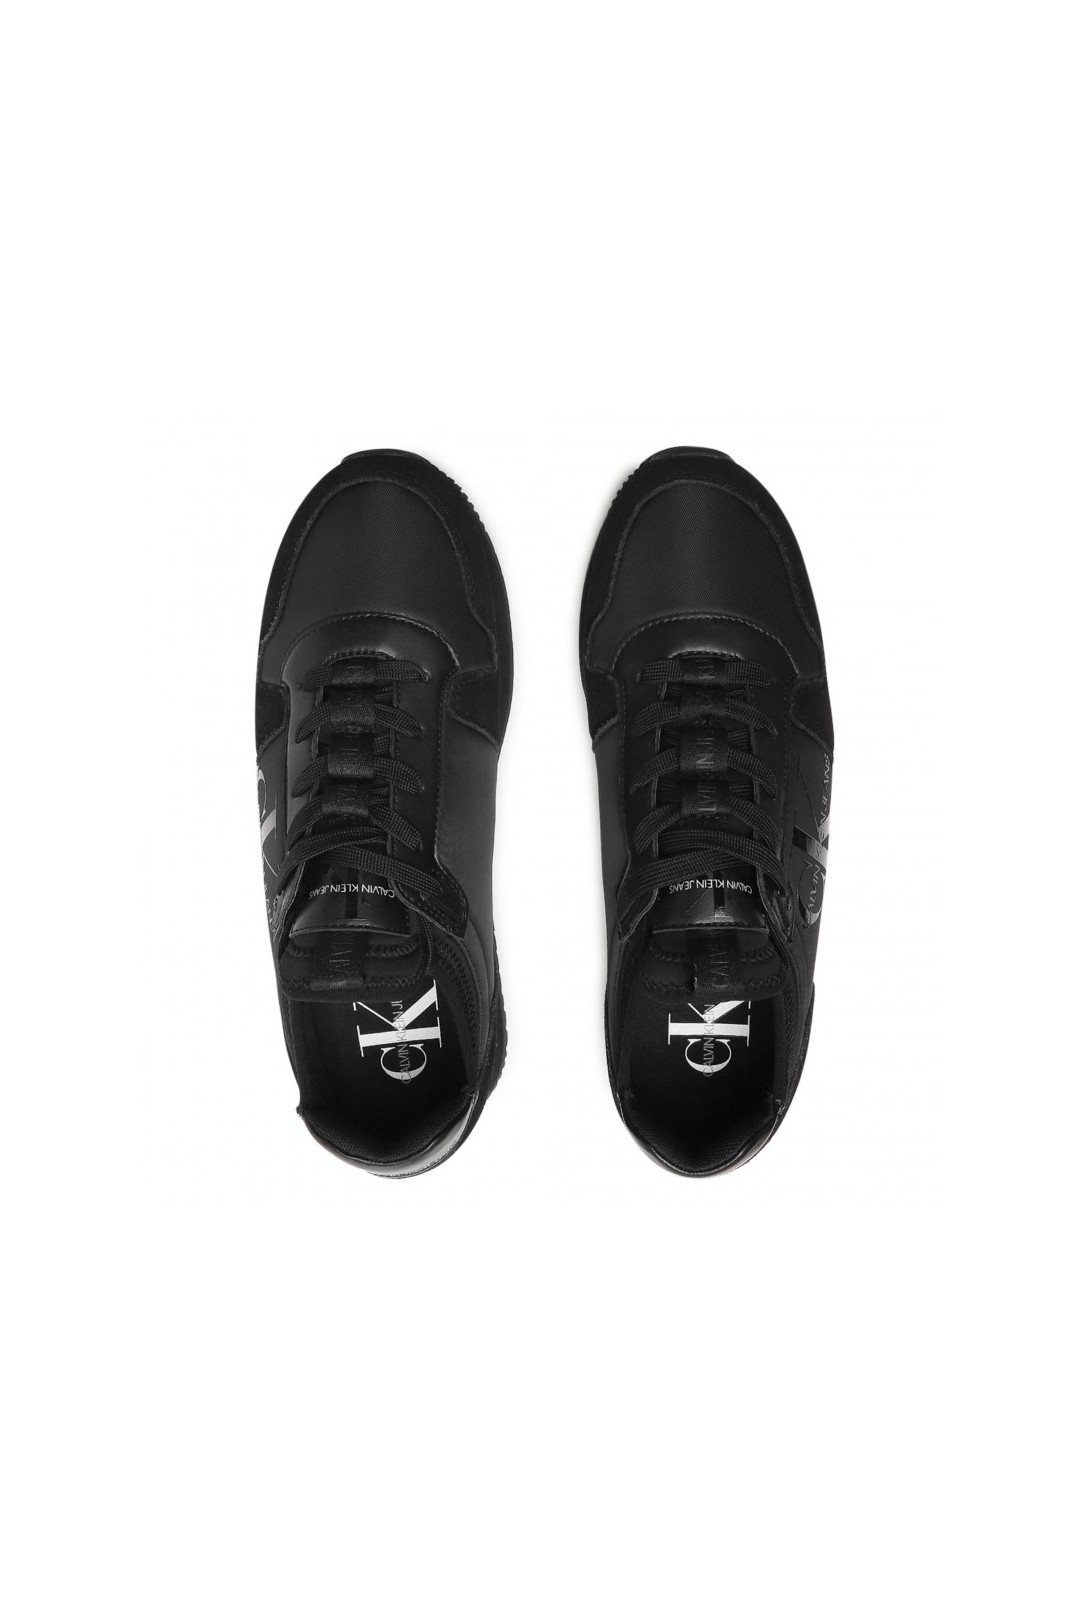 Chaussure mixte sneakers Calvin Klein de couleur noir en daim et simili cuir. YM0YM00040 FIESTA CONCEPT STORE